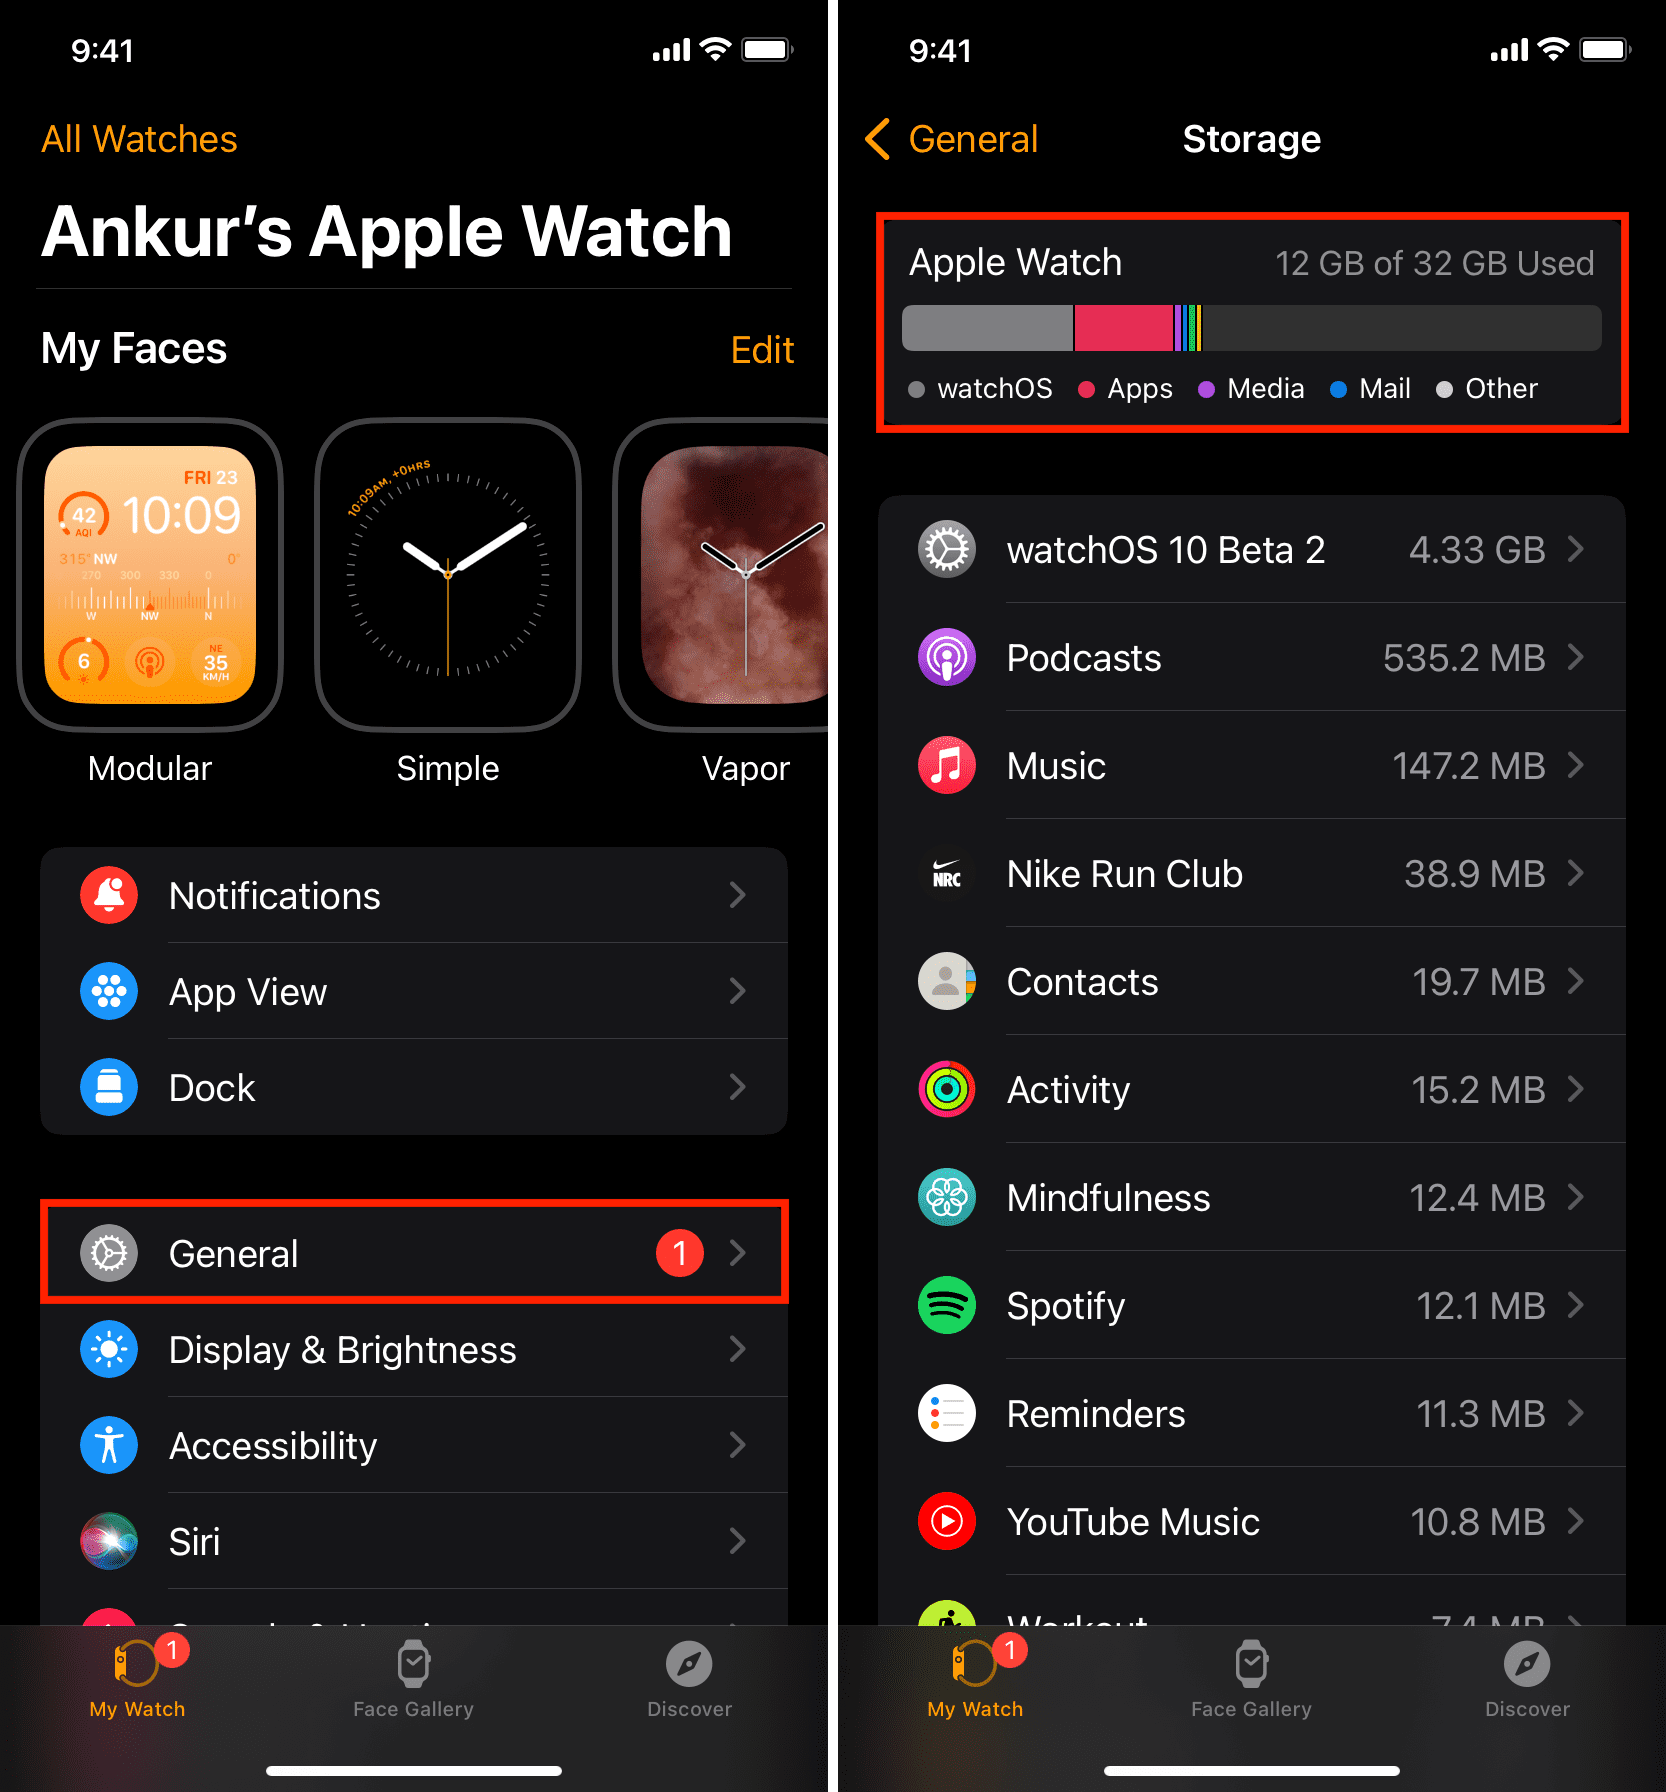 Apple Watch storage details in iOS Watch app